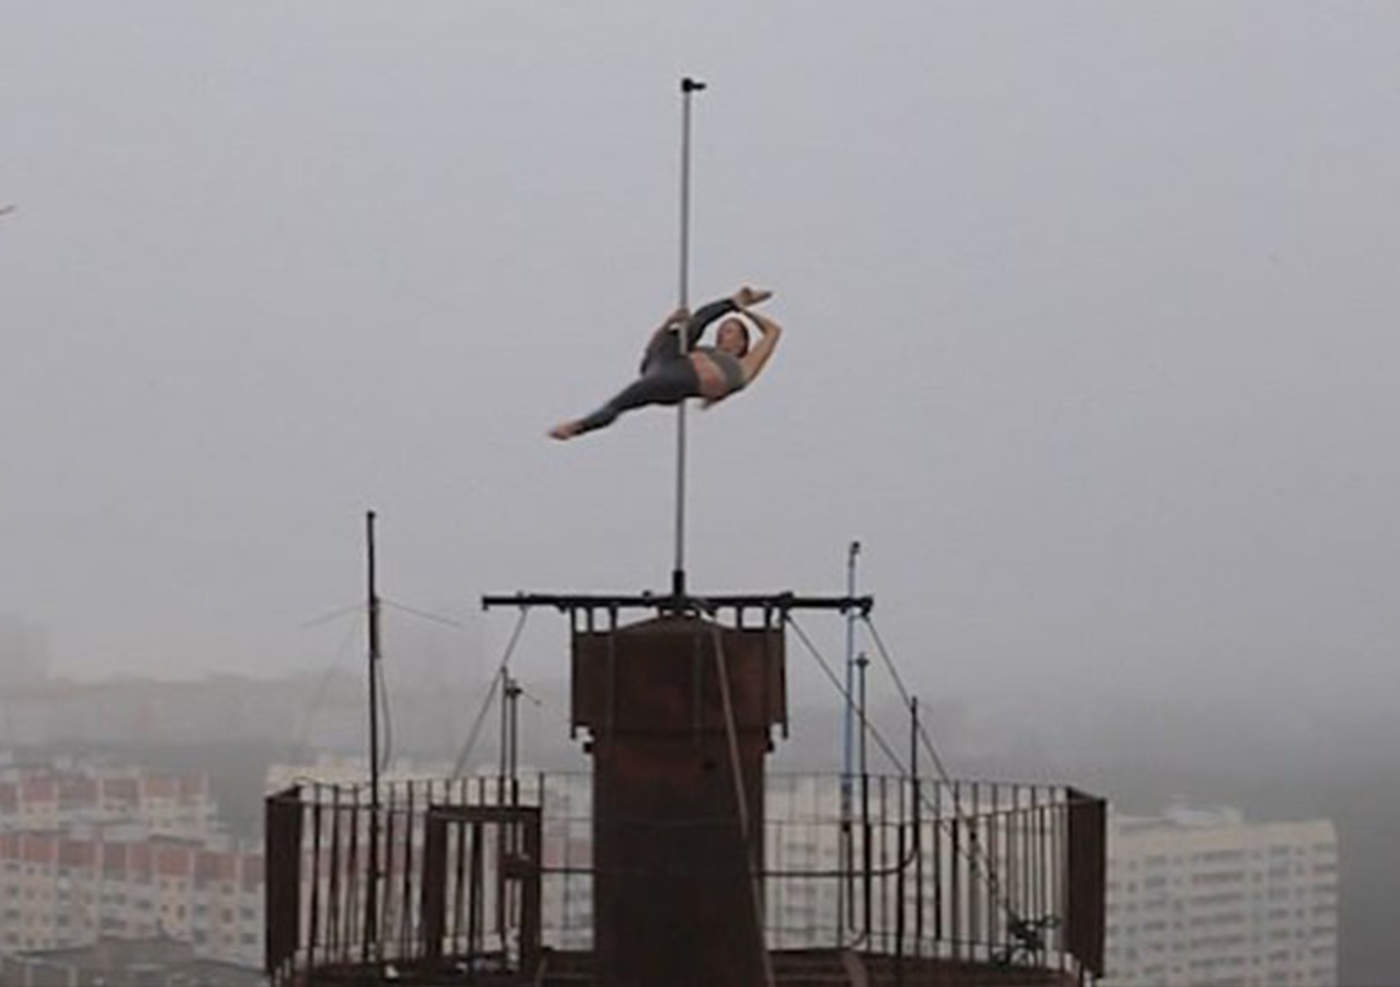 Bailarina realiza peligrosa rutina de 'pole dance' sobre rascacielos